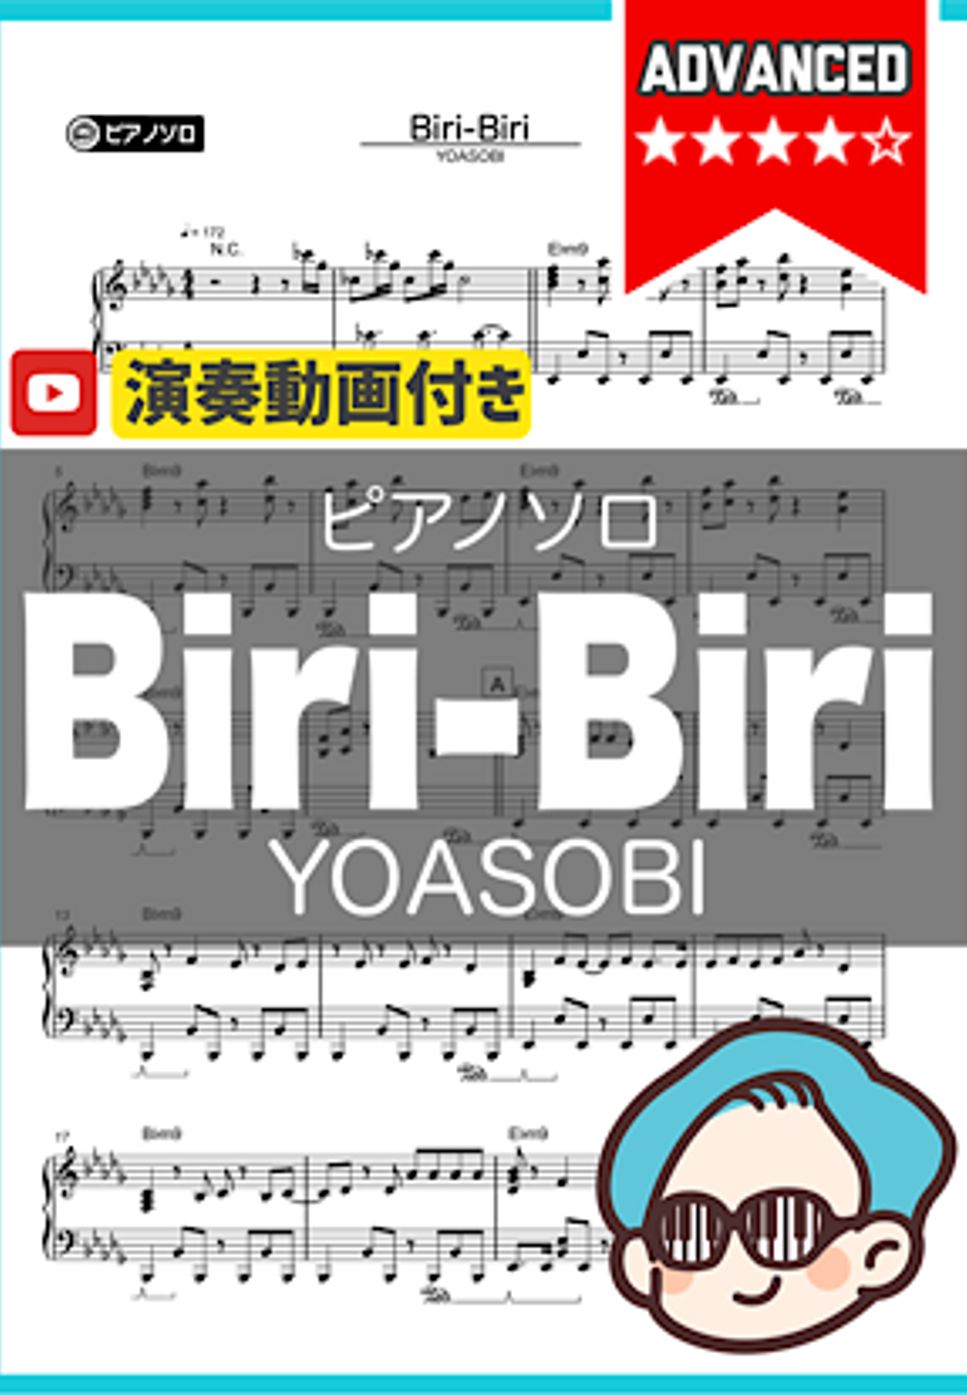 YOASOBI - Biri-Biri by シータピアノ